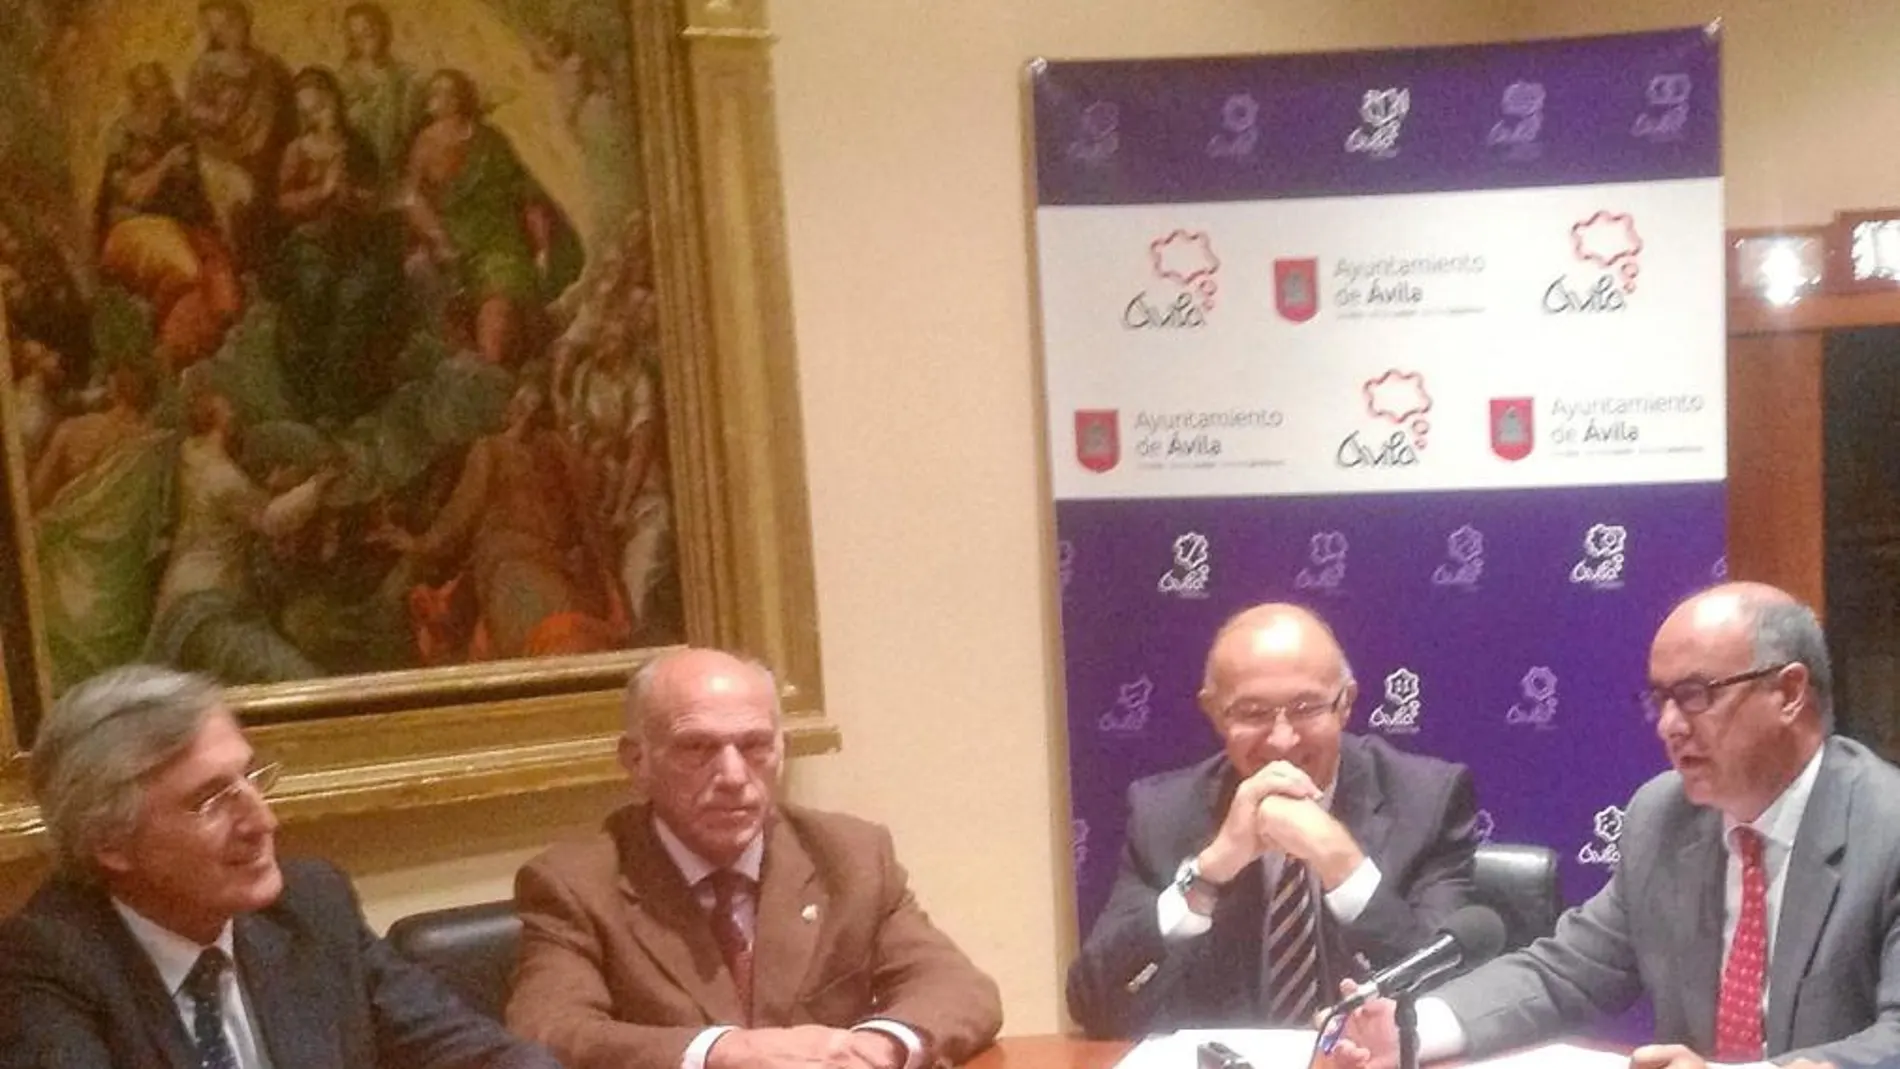 García Nieto interviene en la rueda de prensa, en presencia de José Luis Rivas, Agustín González y Ruiz Medrano